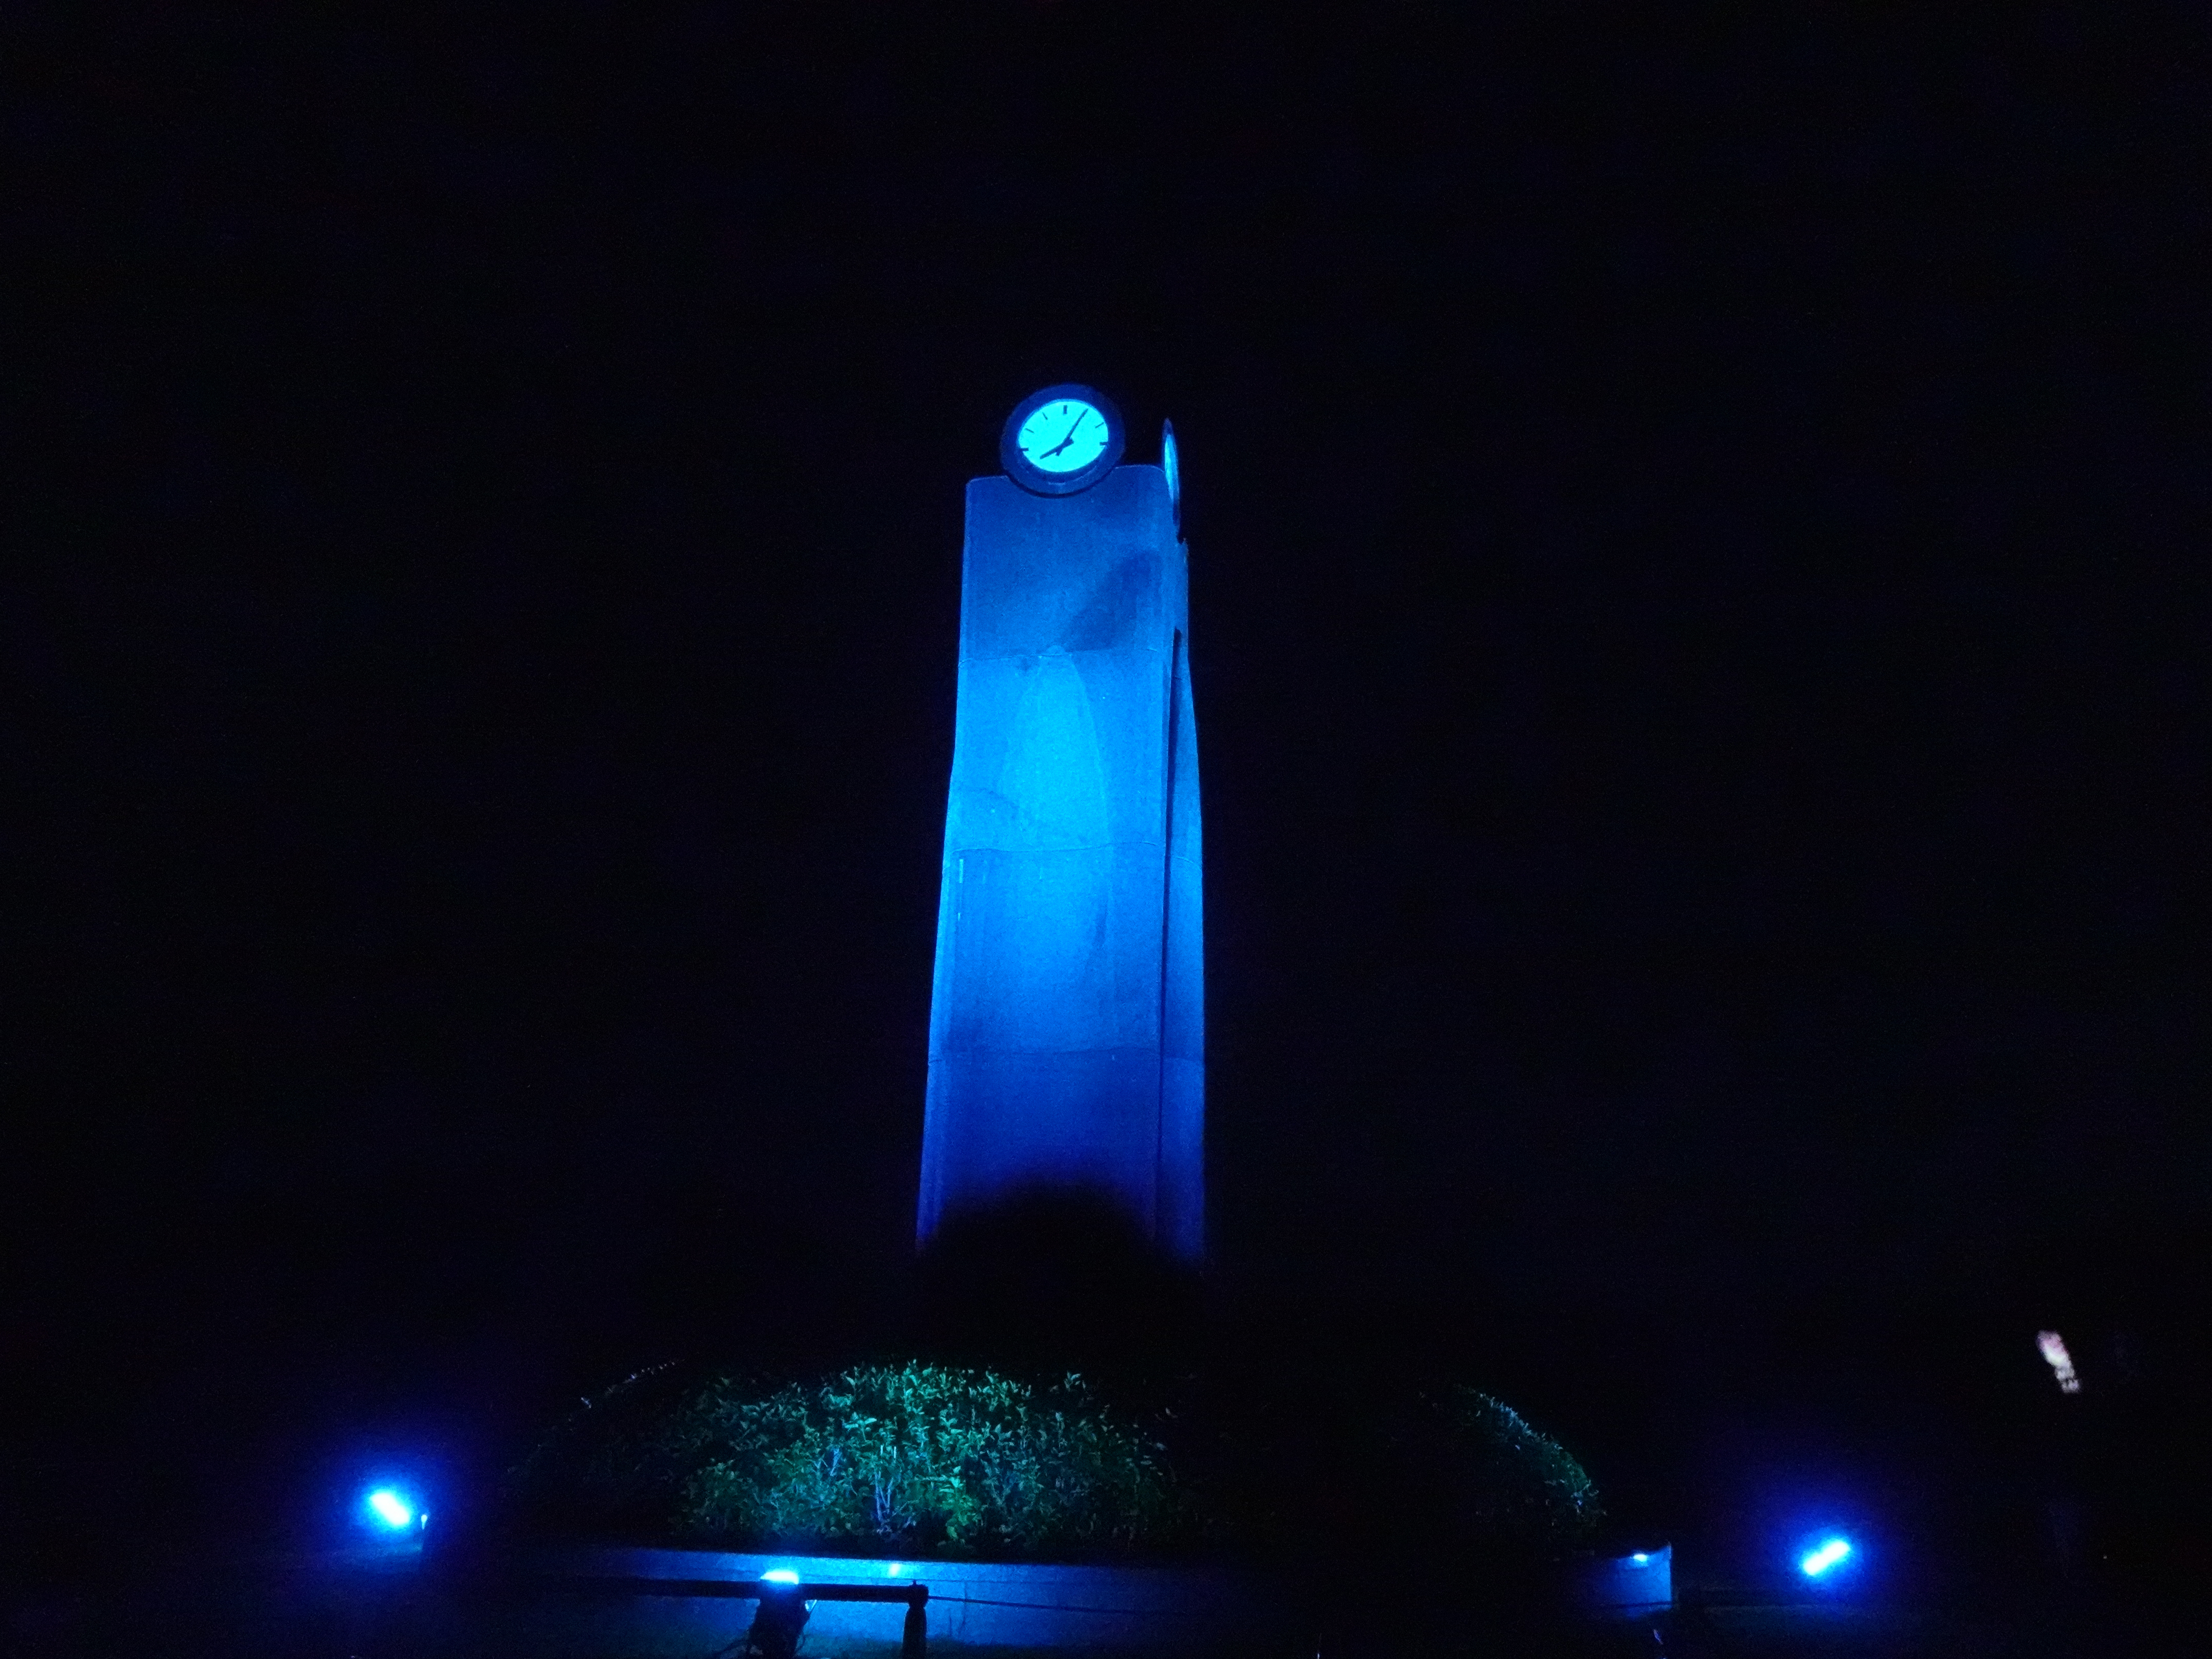 沖縄平和祈念公園のエントランス広場時計台「ライトアップ」